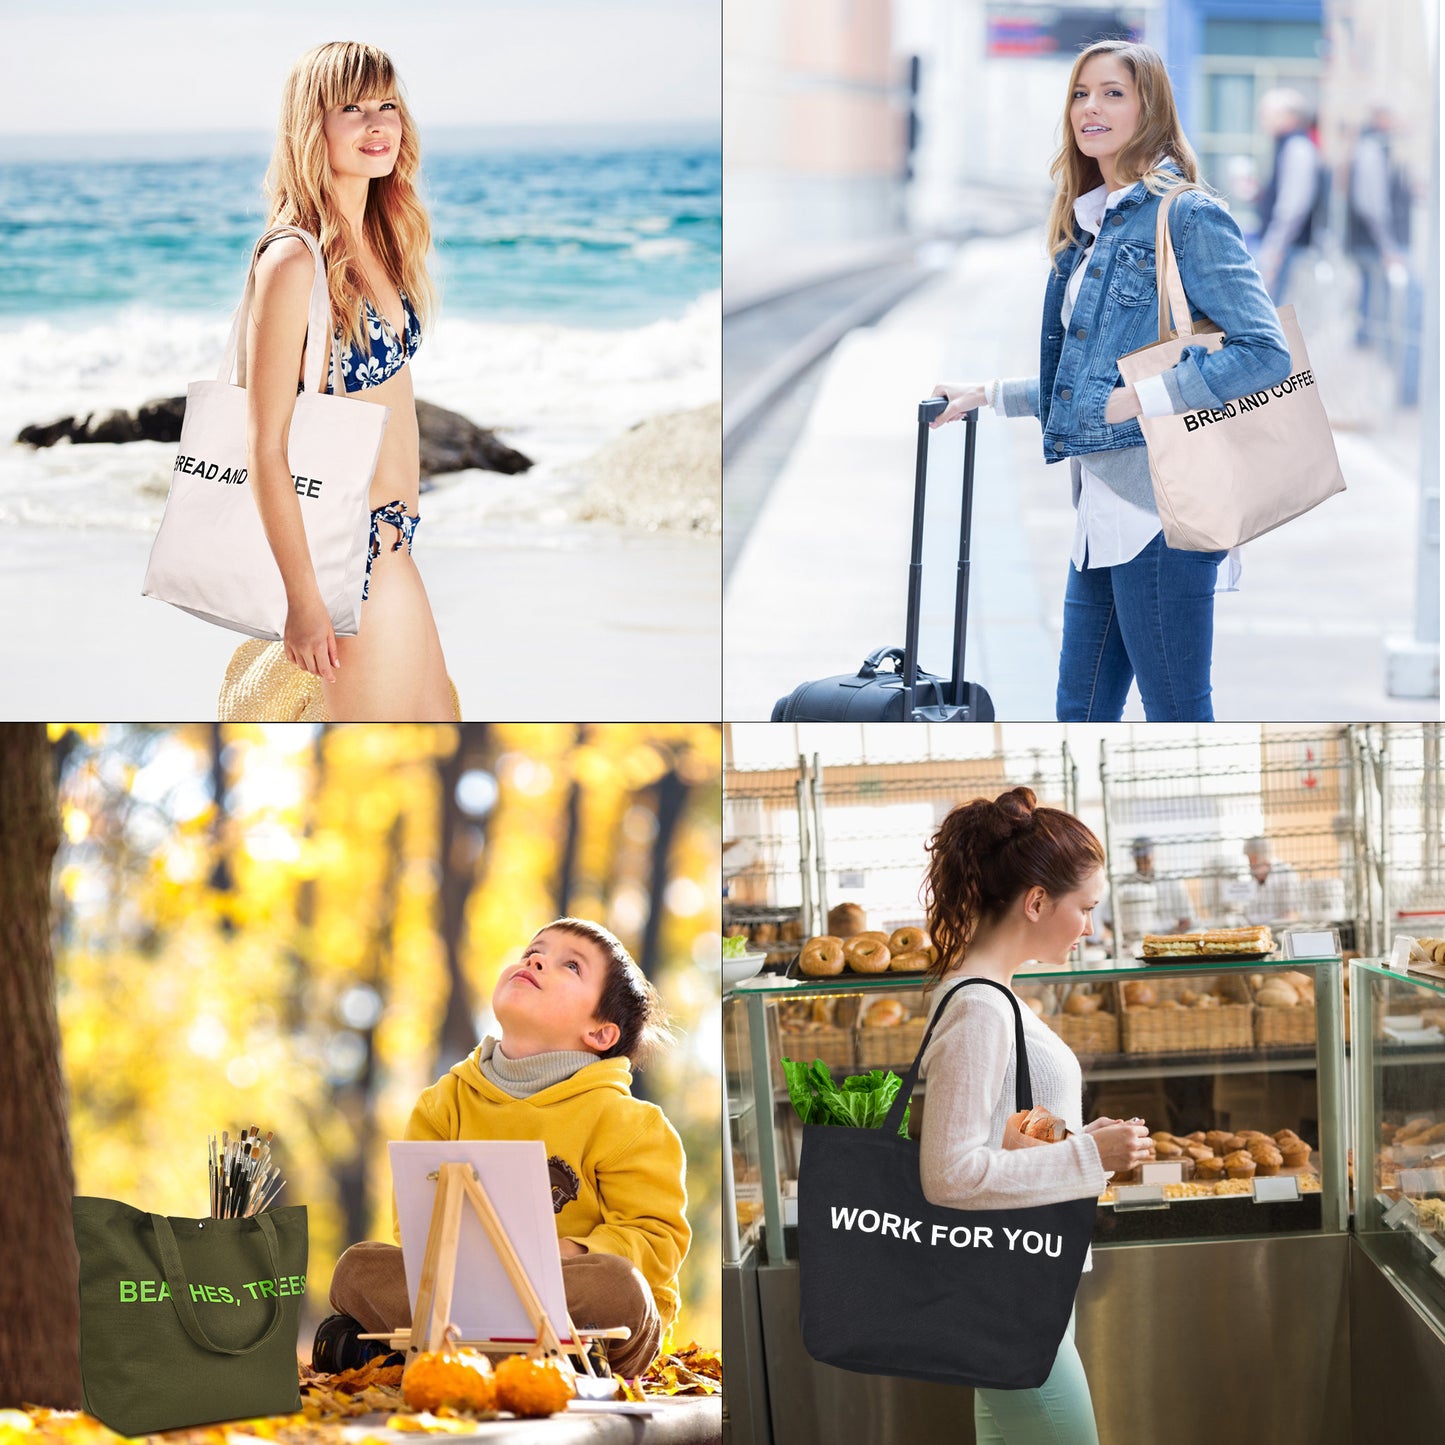 JIYUERLTD Trendy Tote Bag-16oz Canvas Shopper pour les acheteurs à la mode et les amateurs de plein air